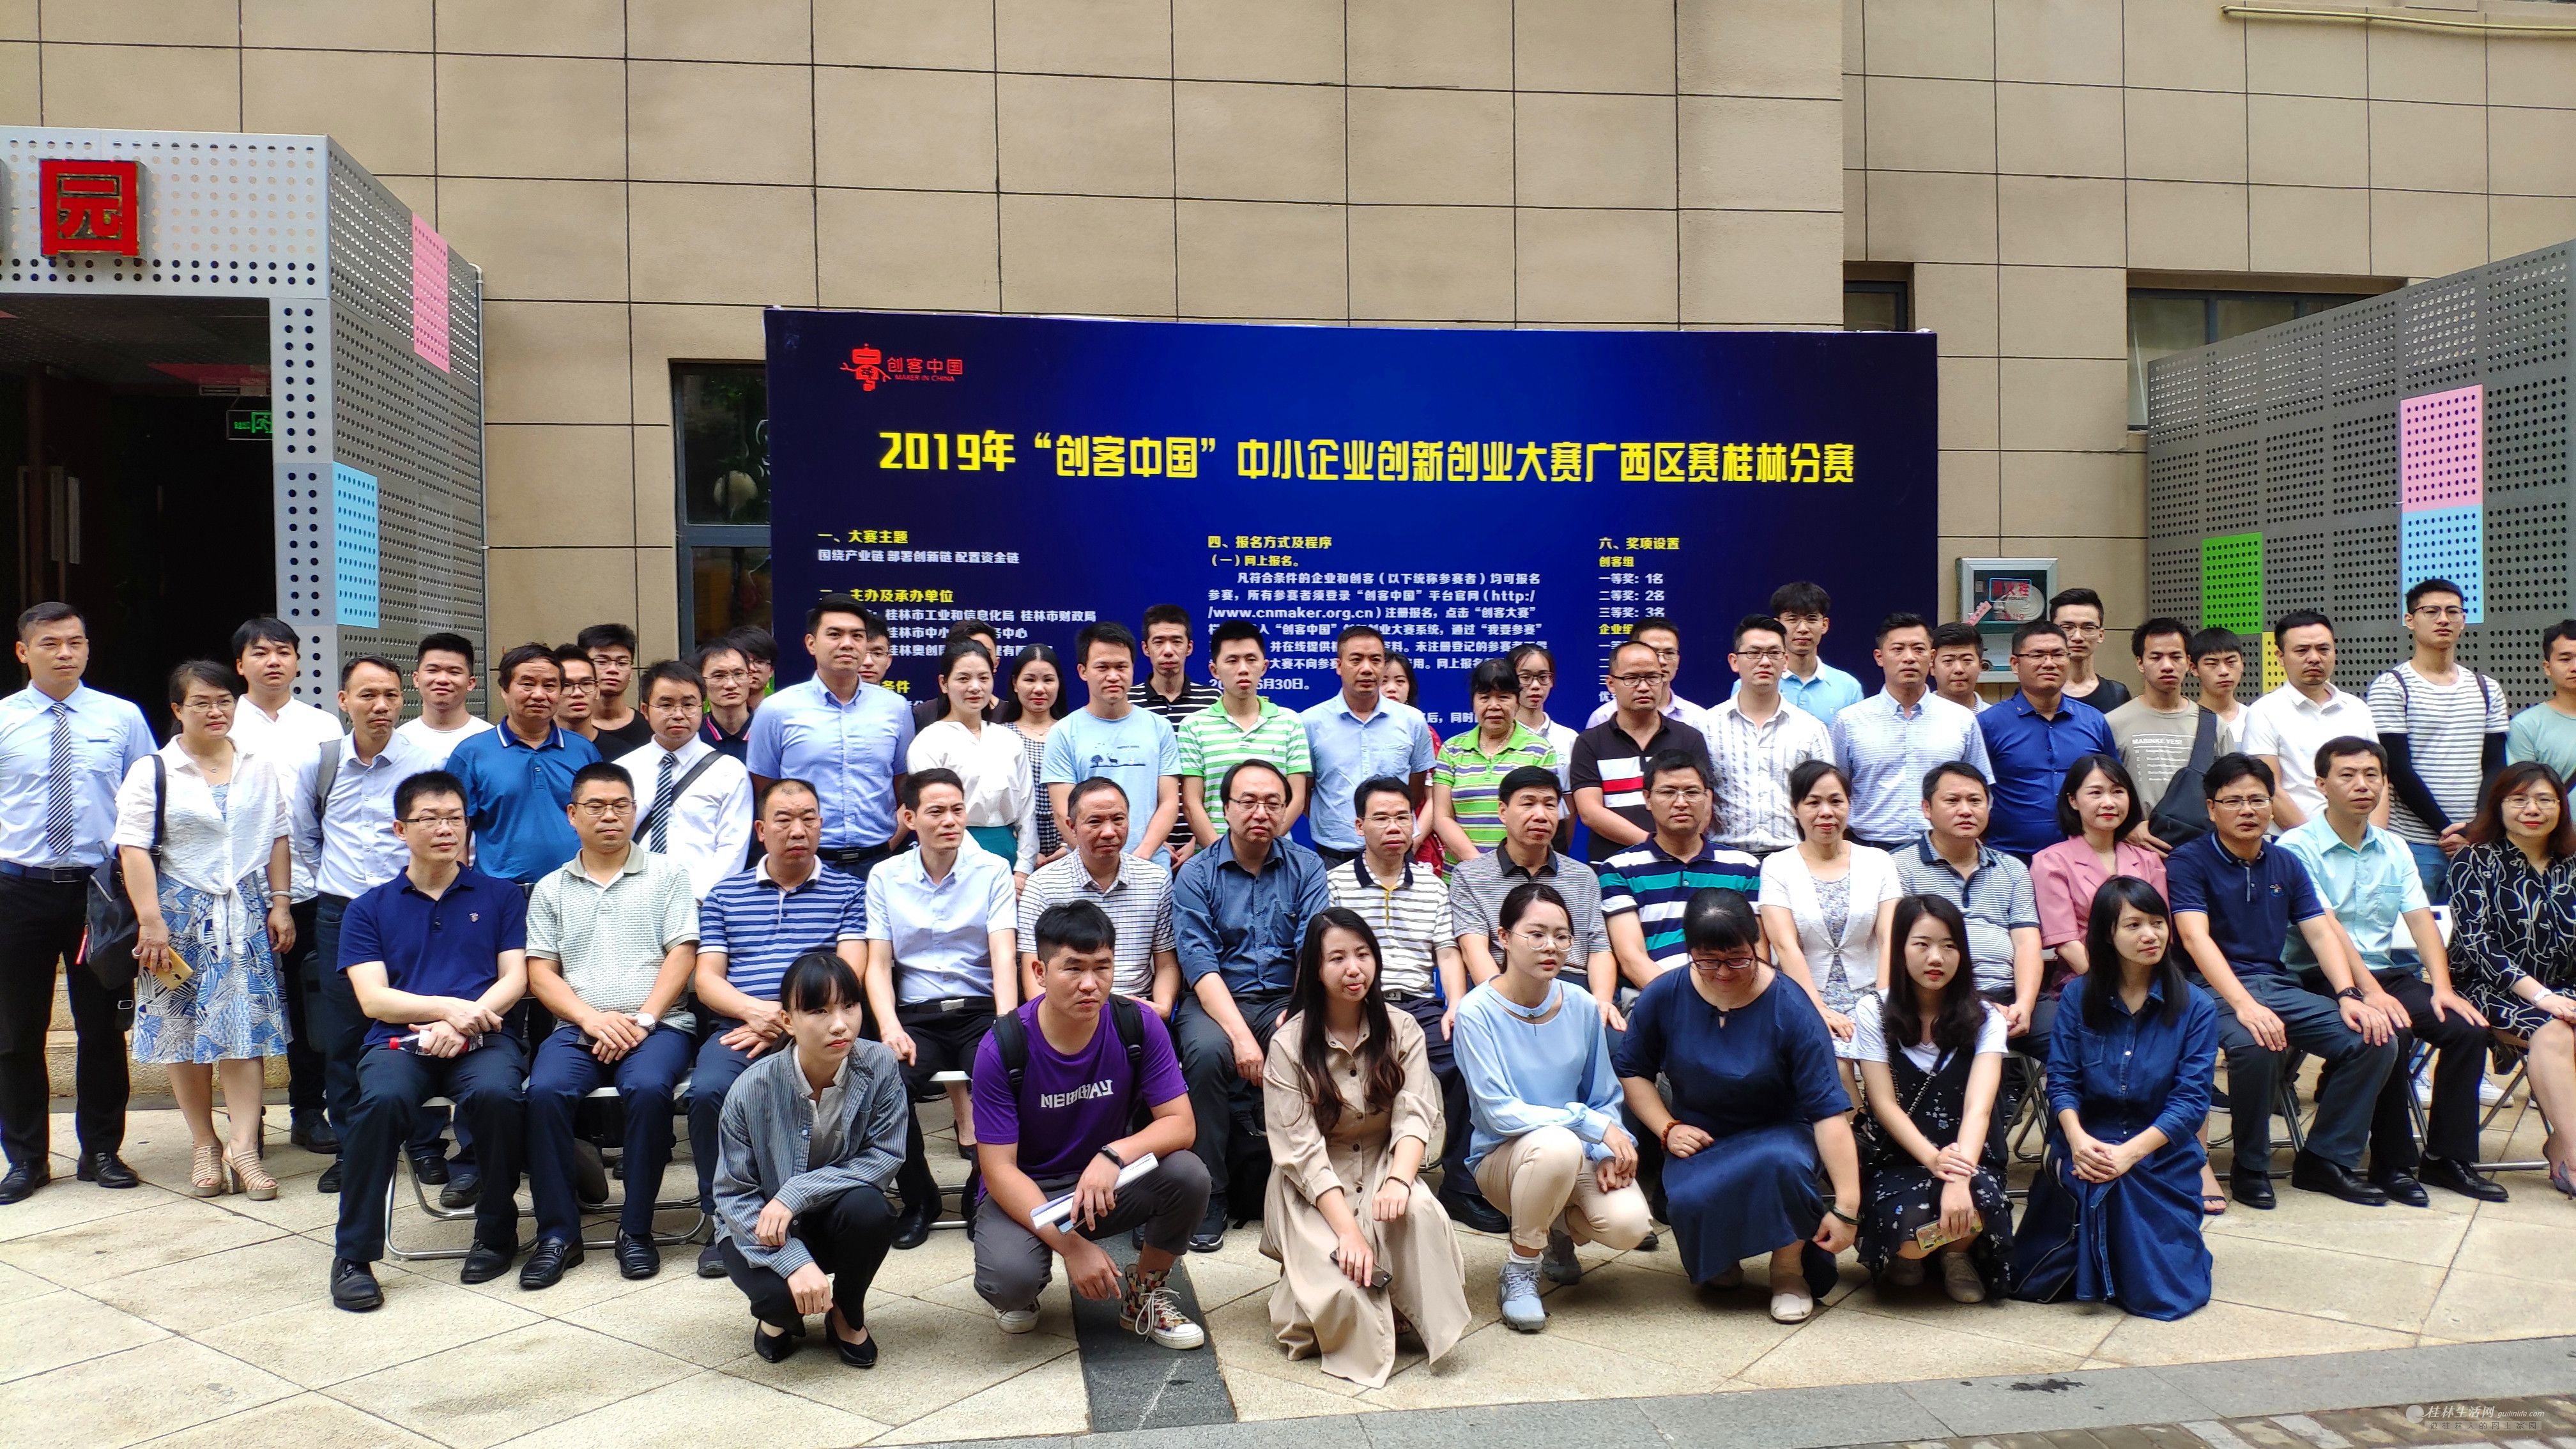 2019年“创客中国”中小企业创新创业大赛广西区桂林分赛开